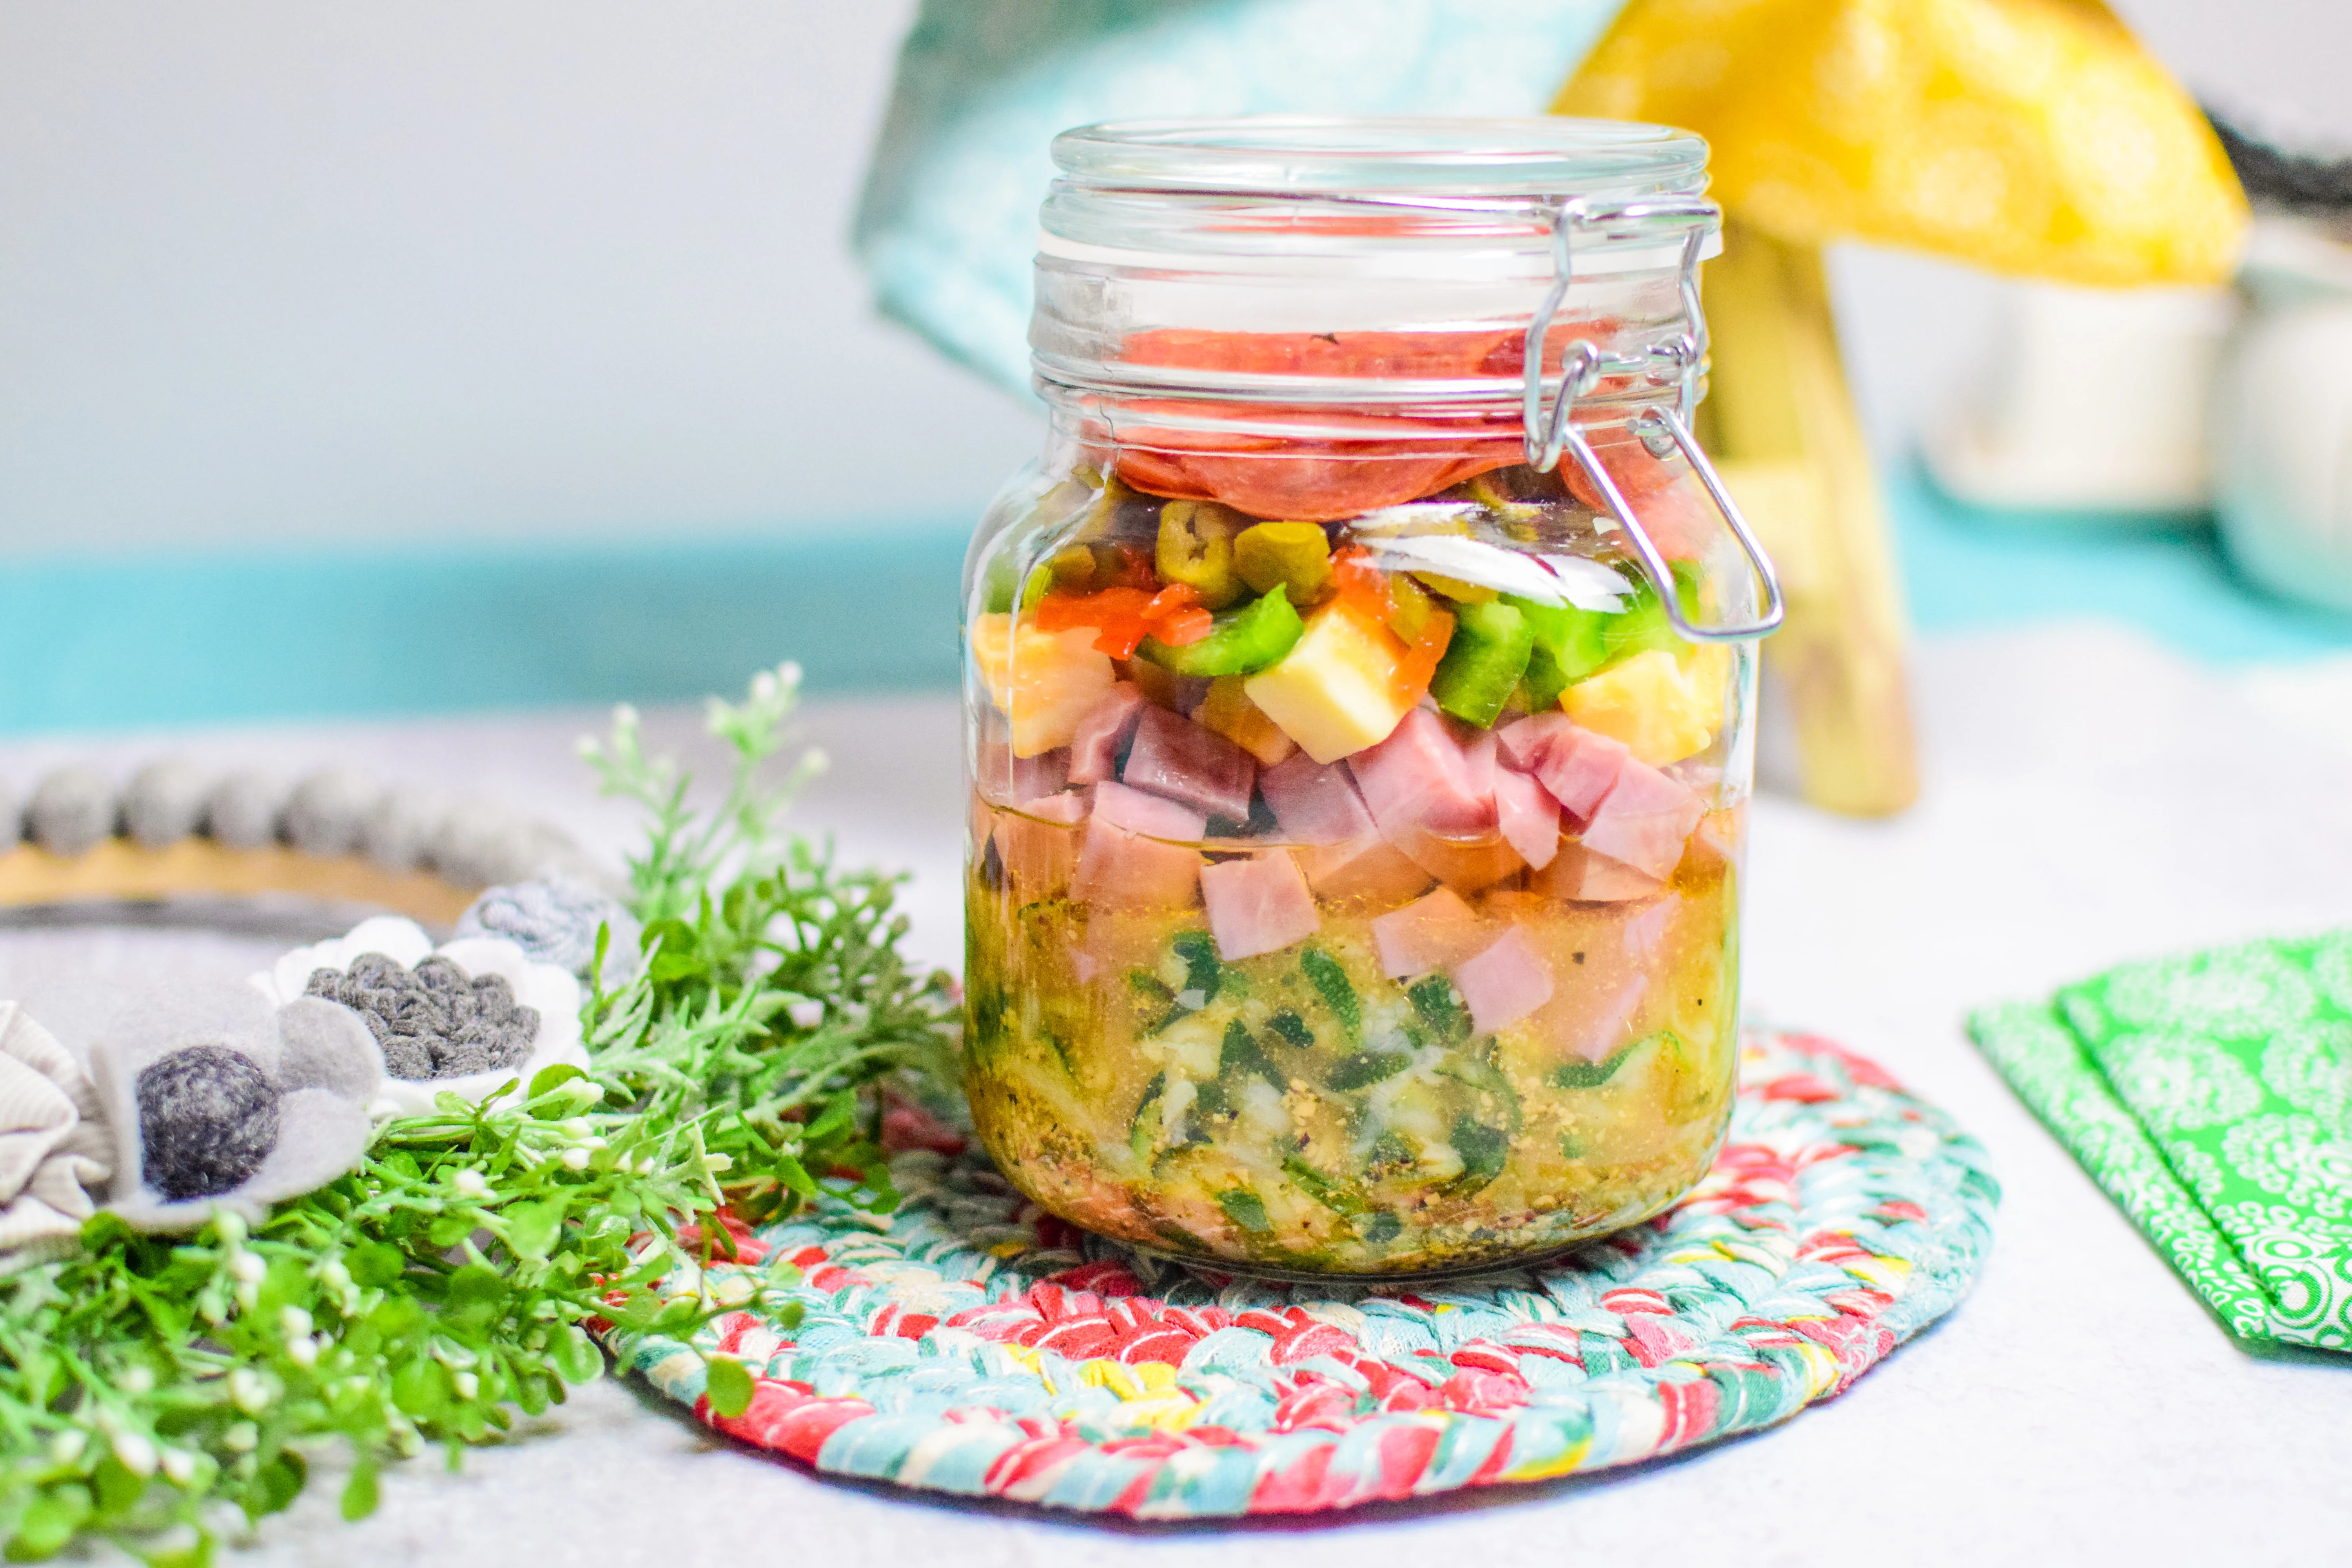 Keto Pasta Salad in a Jar